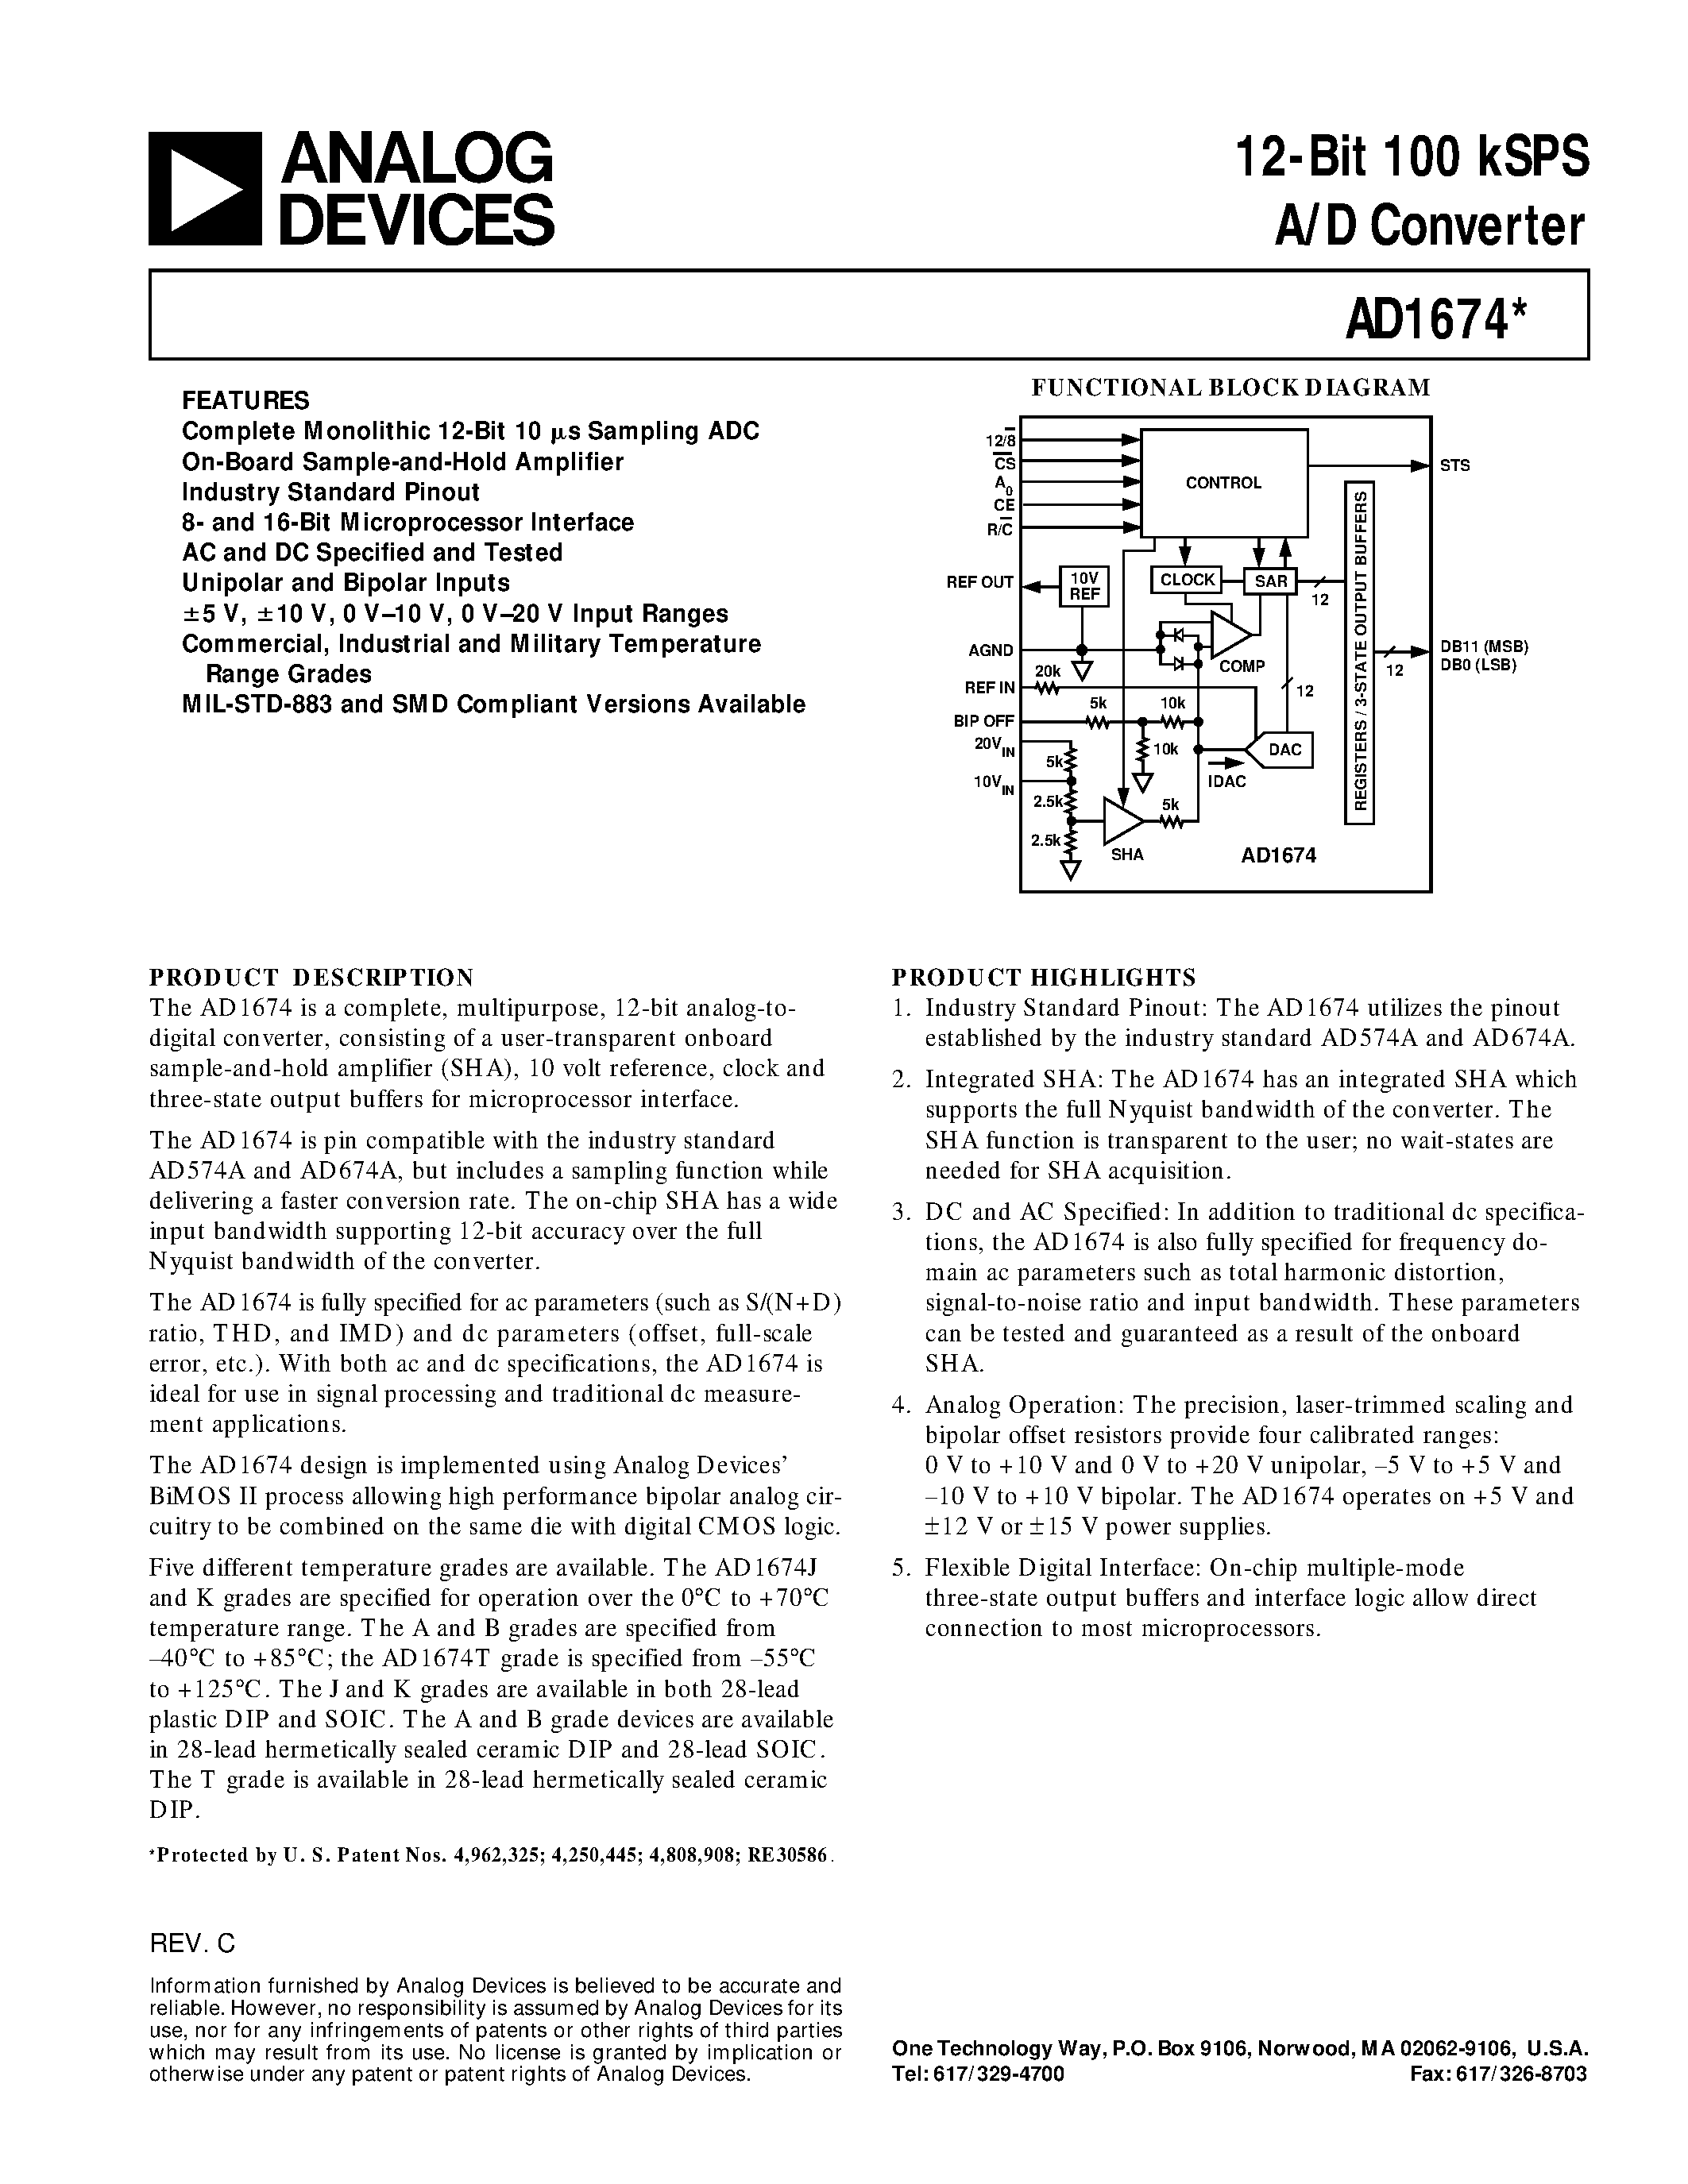 Datasheet AD1674K - 12-Bit 100 kSPS A/D Converter page 1